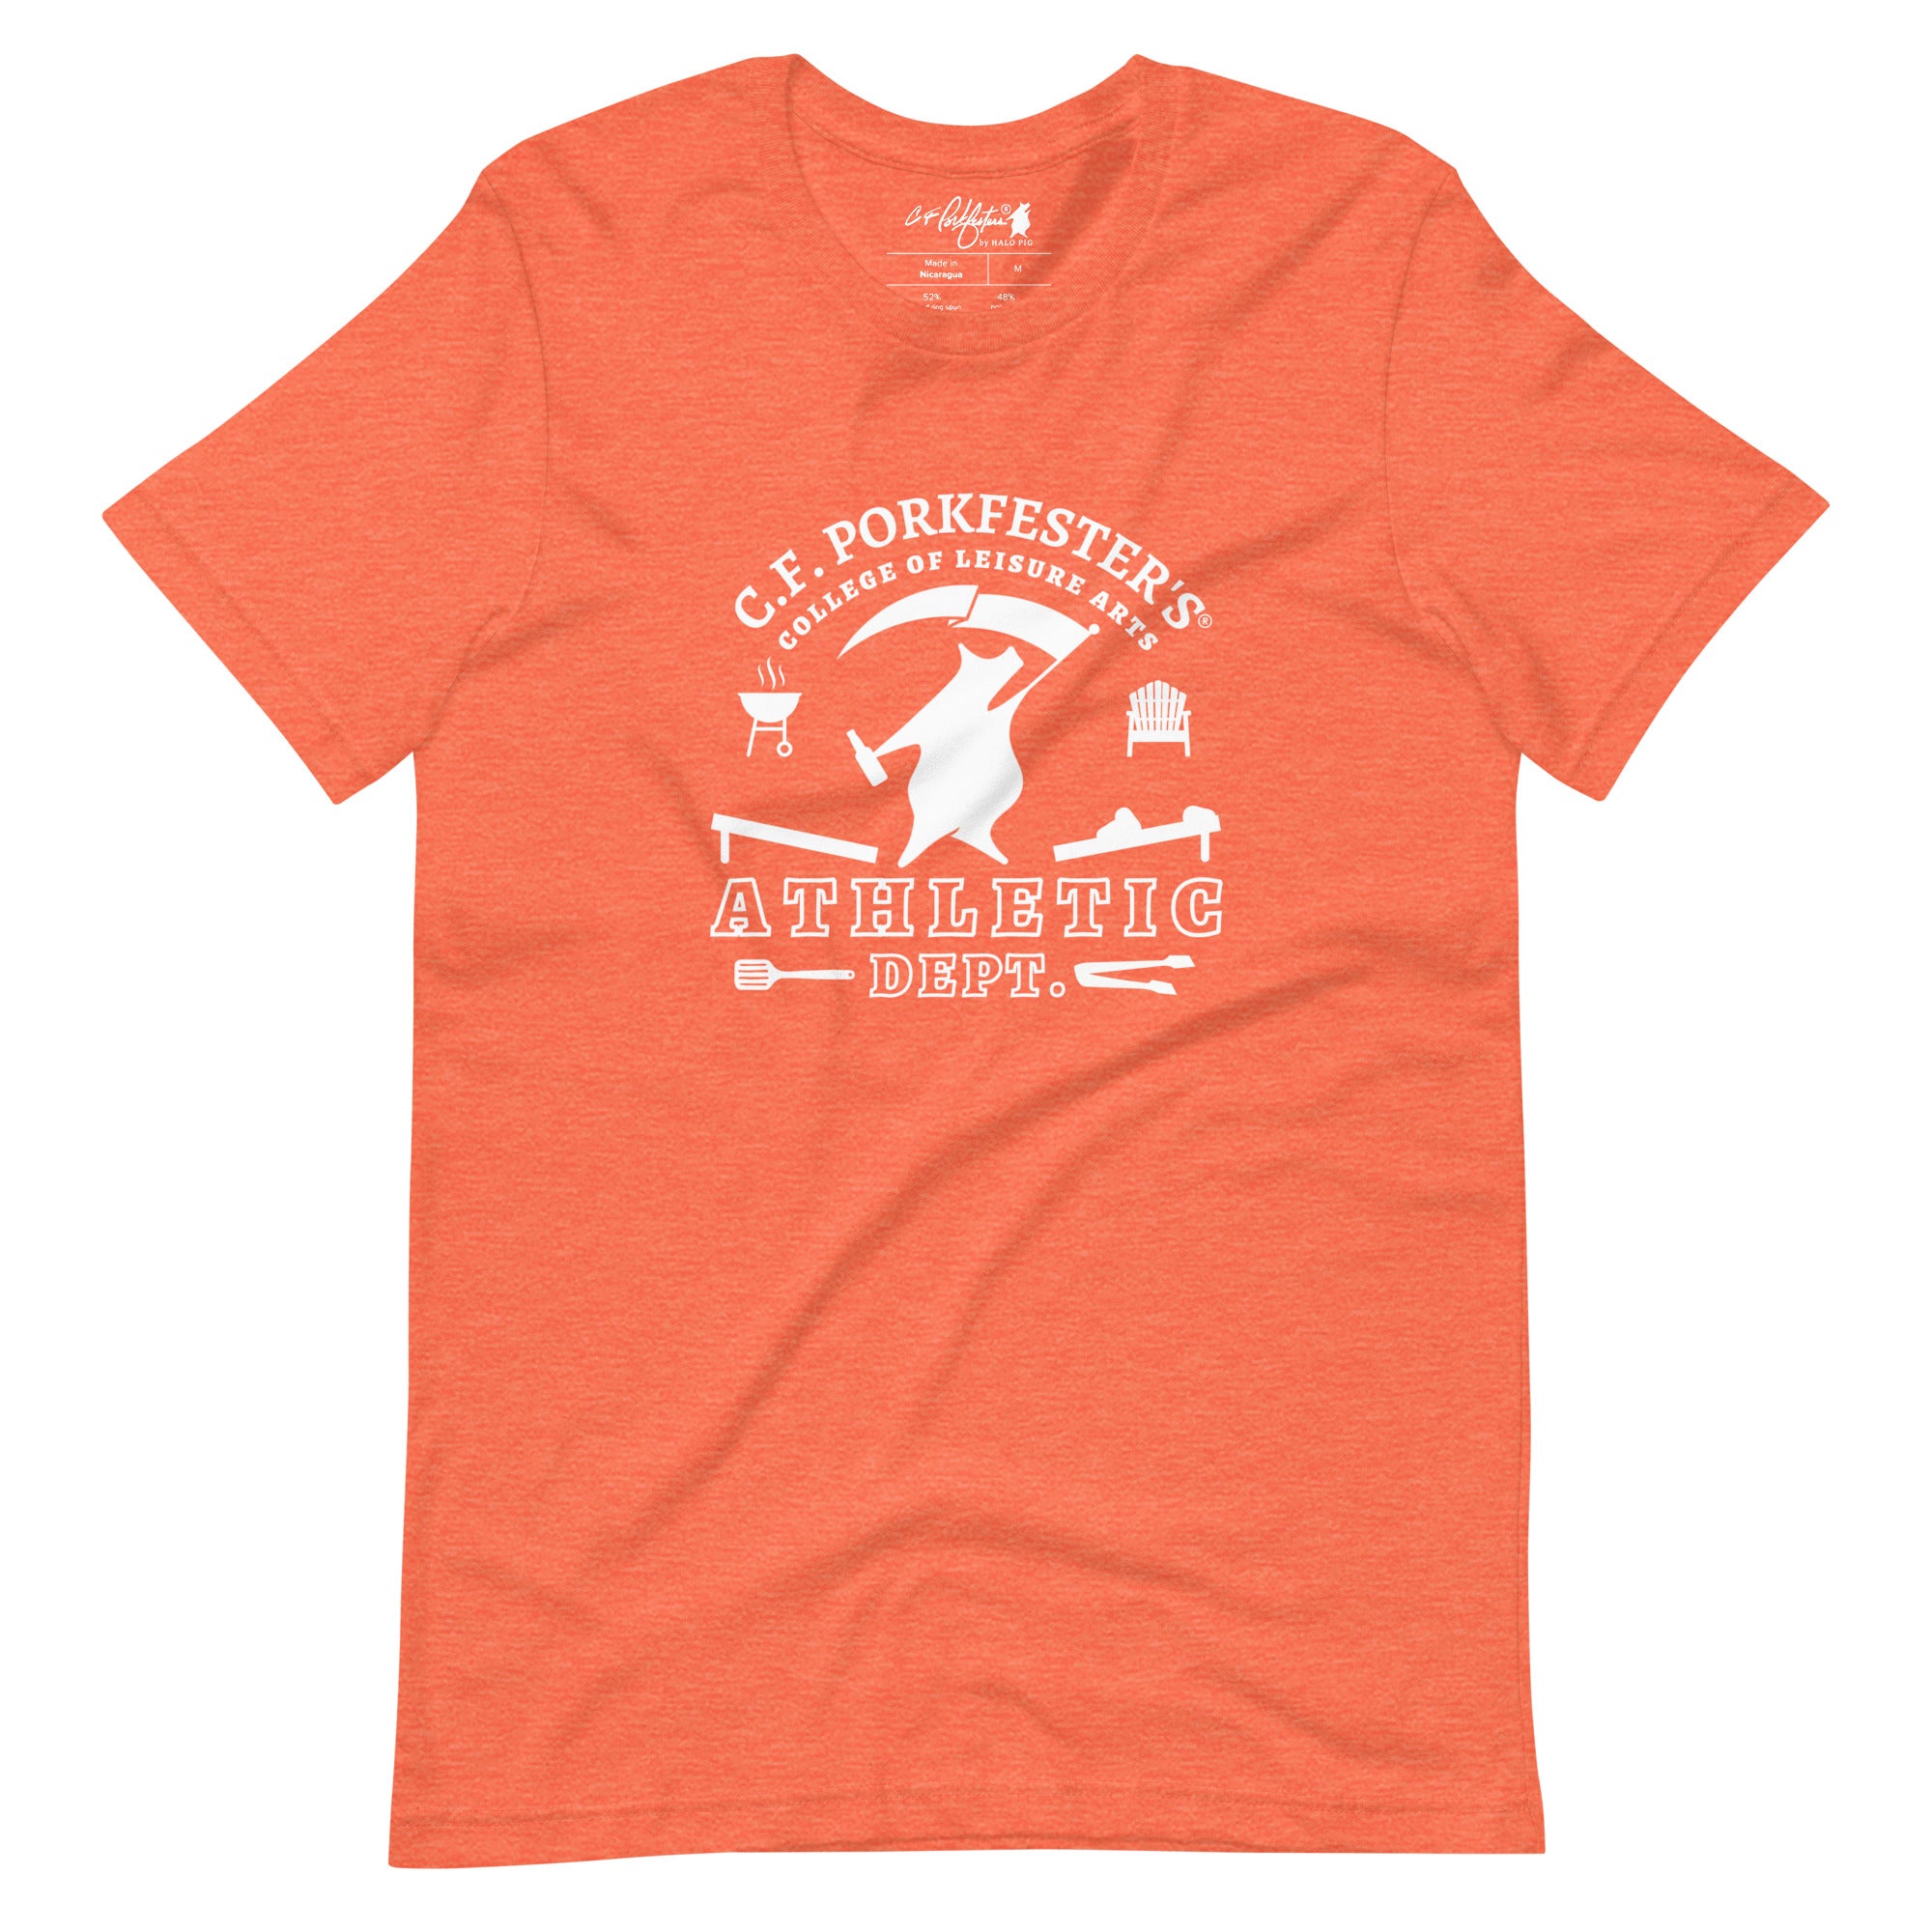 C.F. Porkfester's "Athletic Dept." Men's/Unisex T-Shirt